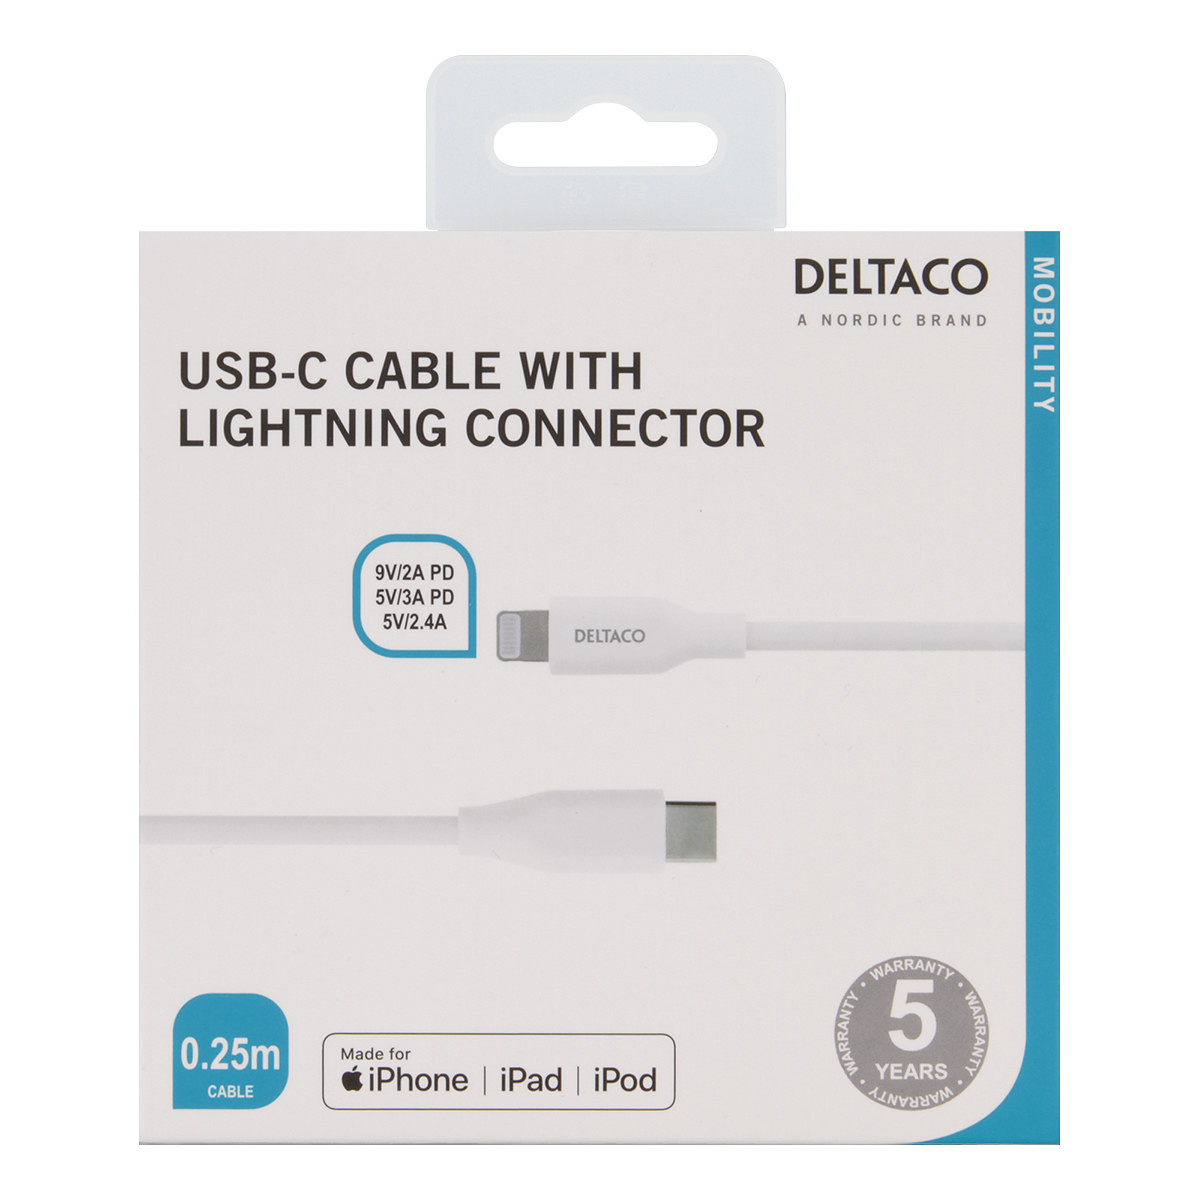 DELTACO USB-C - Lightning kabel, 0.25m, 9V/2A 5V/3A PD, vit